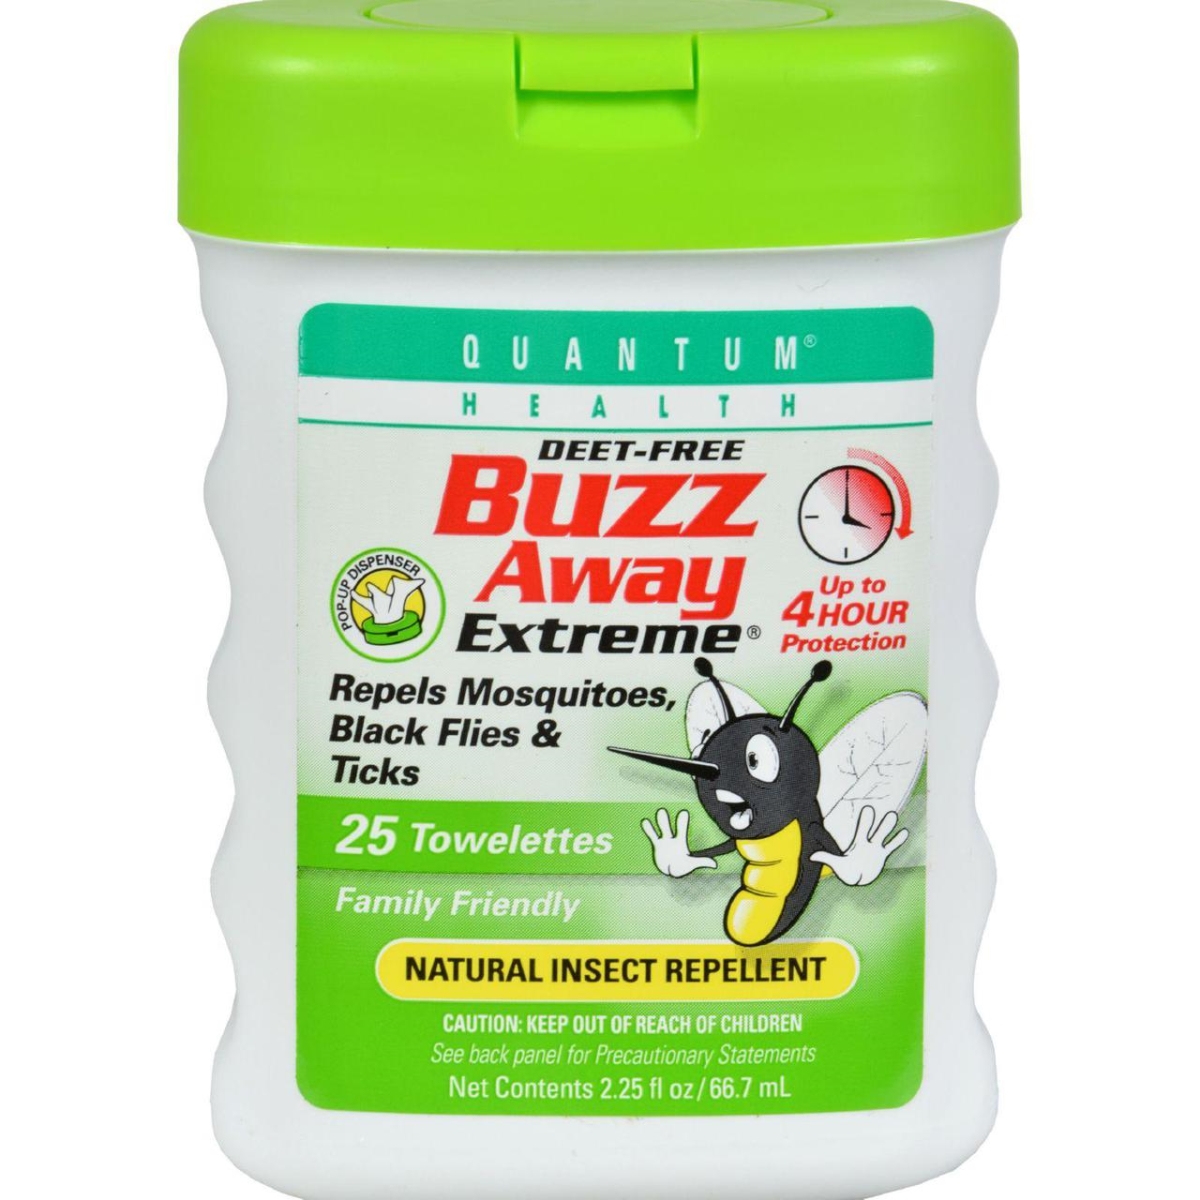 Hg0398933 Quantum Buzz Away Extreme Repellent Pop-up Towelette Dispenser - 25 Towelettes